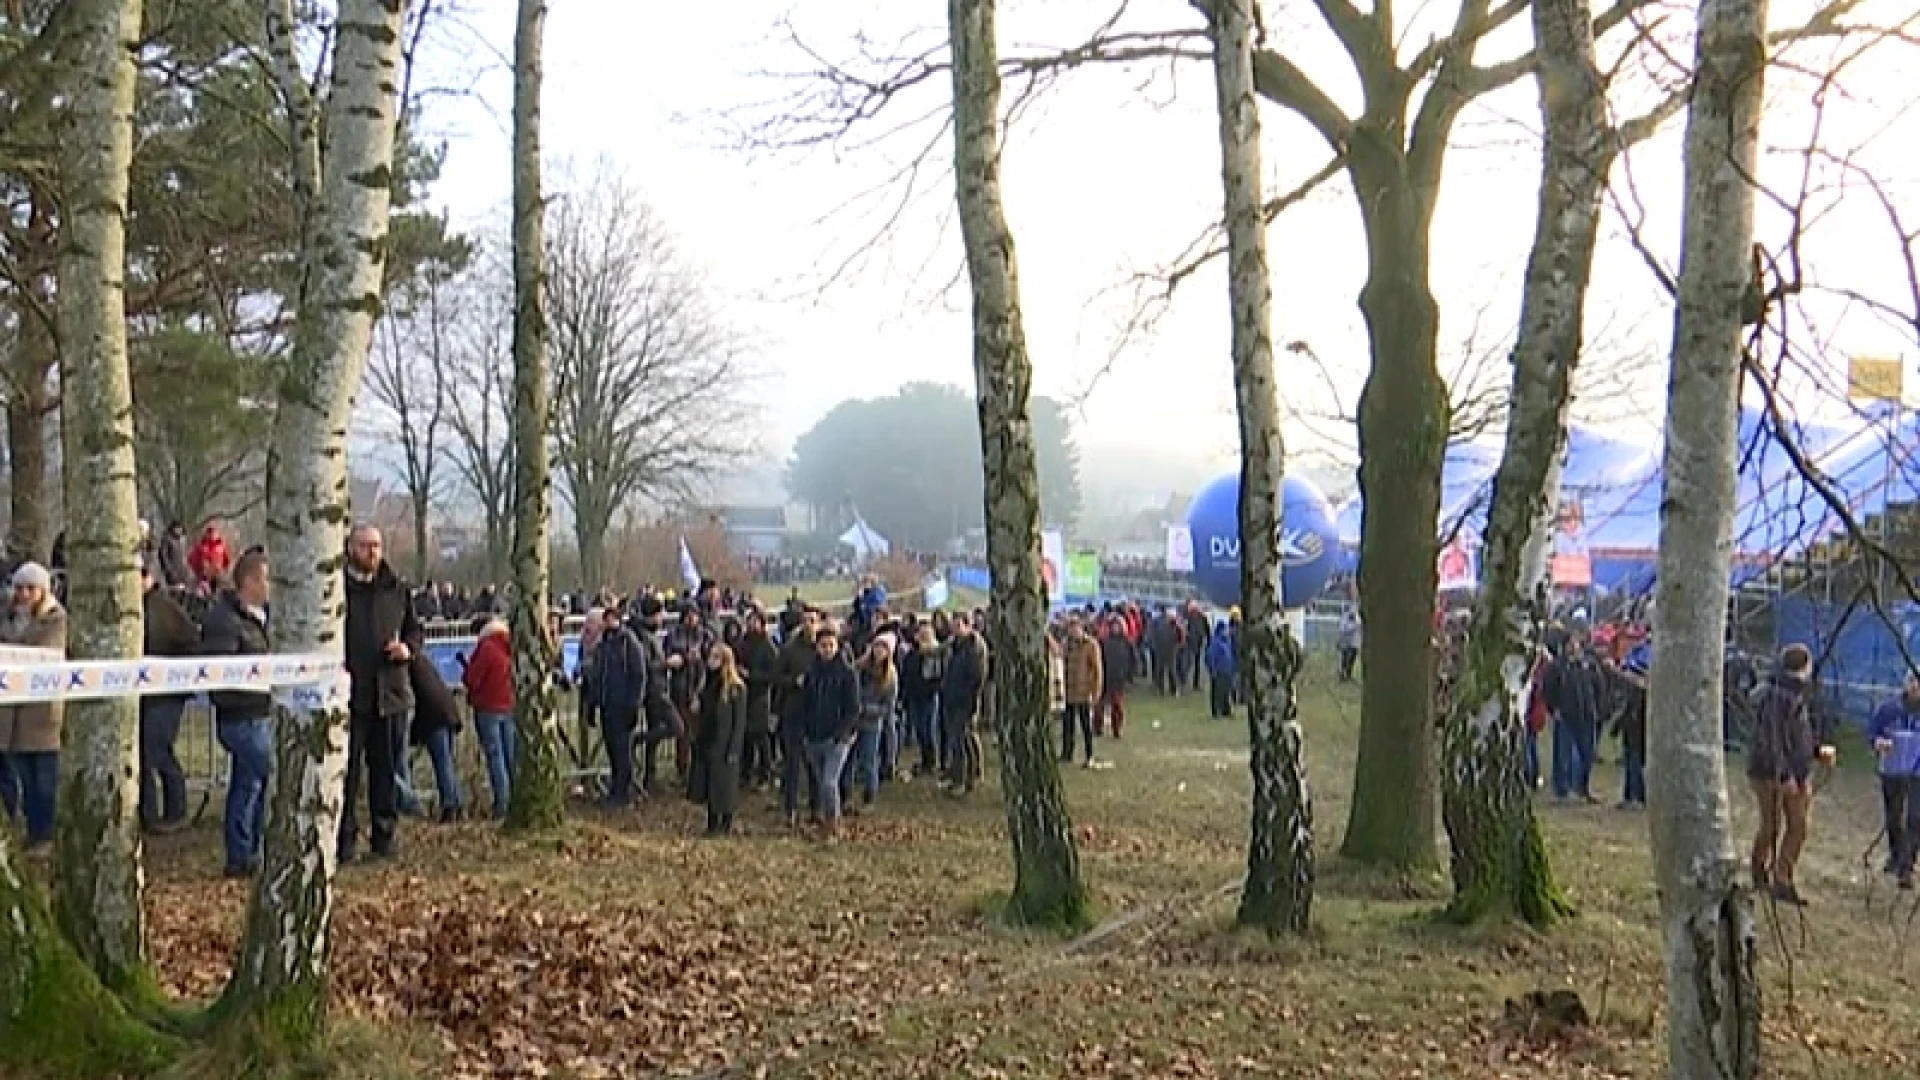 Oost-Brabantse topcrossen in Leuven en Baal gaan door, organisatie heeft plan voor meer toeschouwers